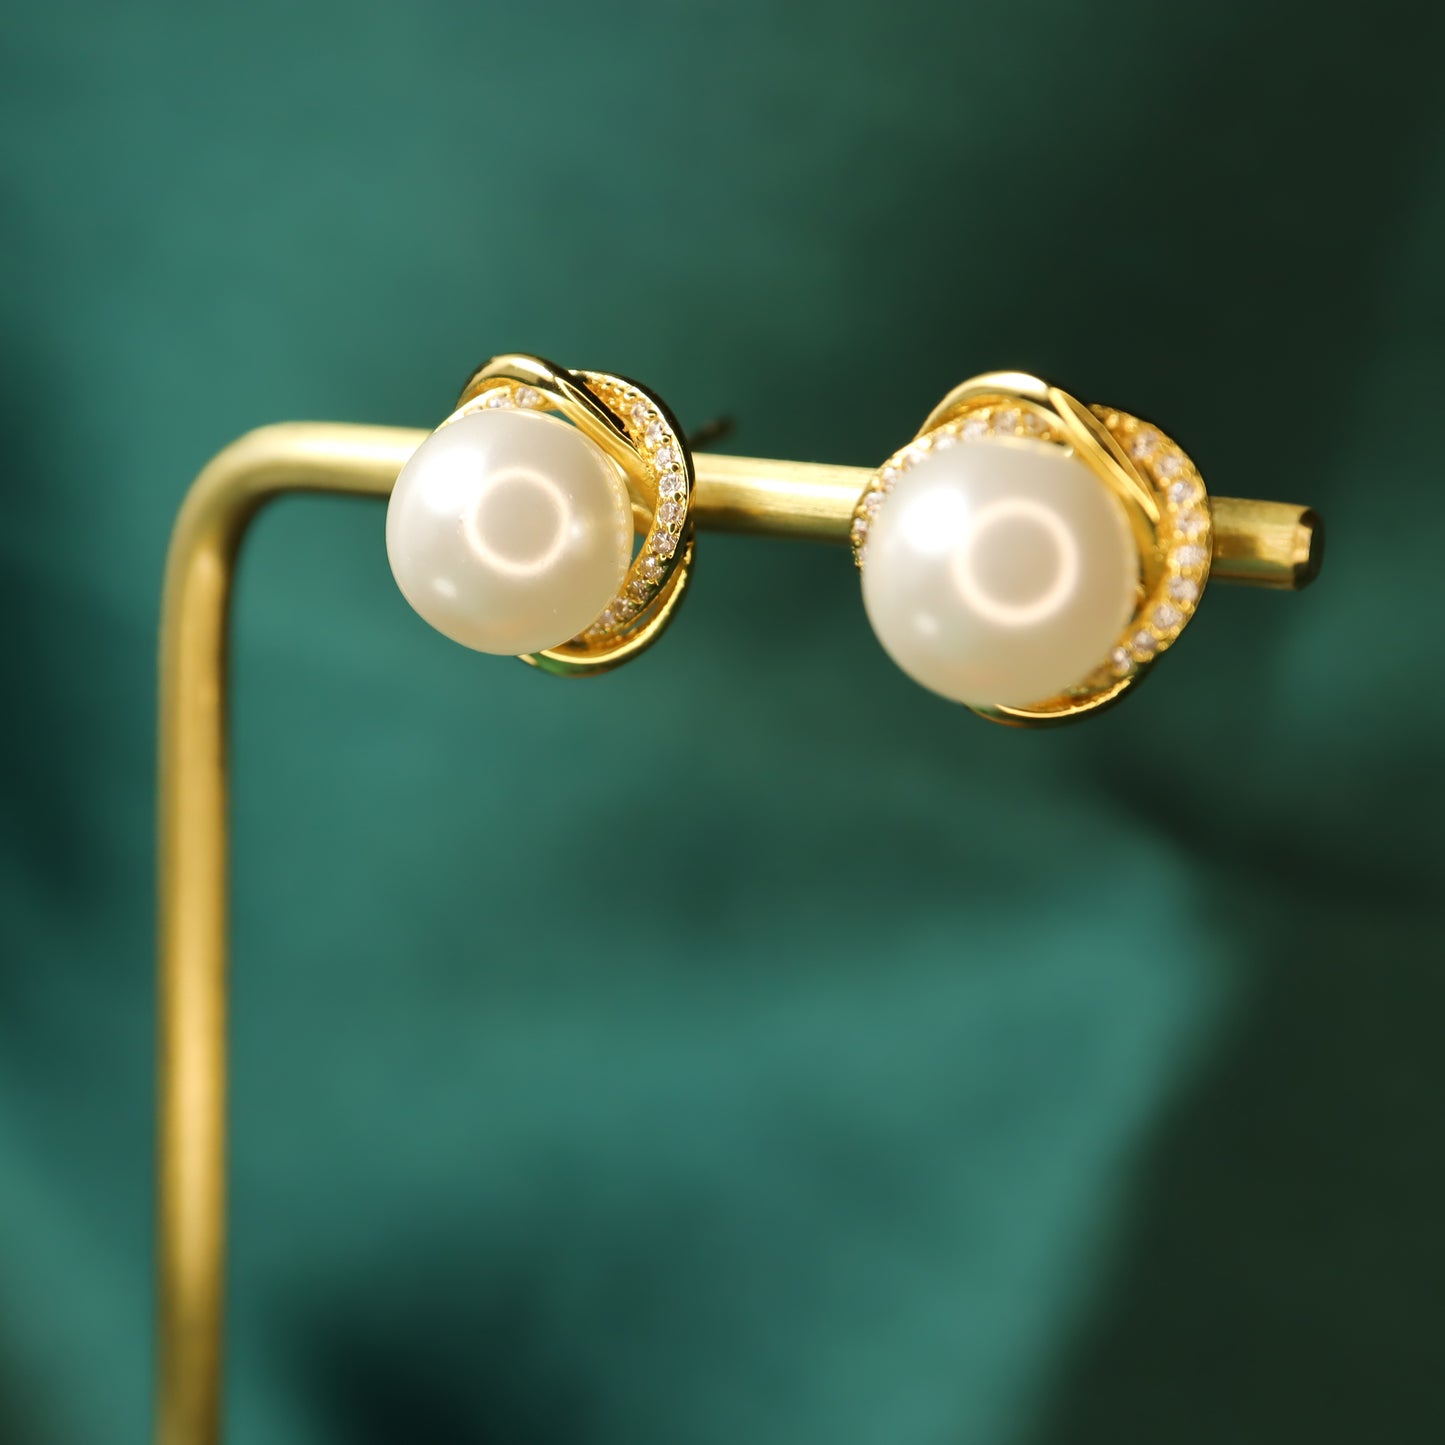 Pearl Flower - S925 Sterling Silver Pearl Stud Earrings